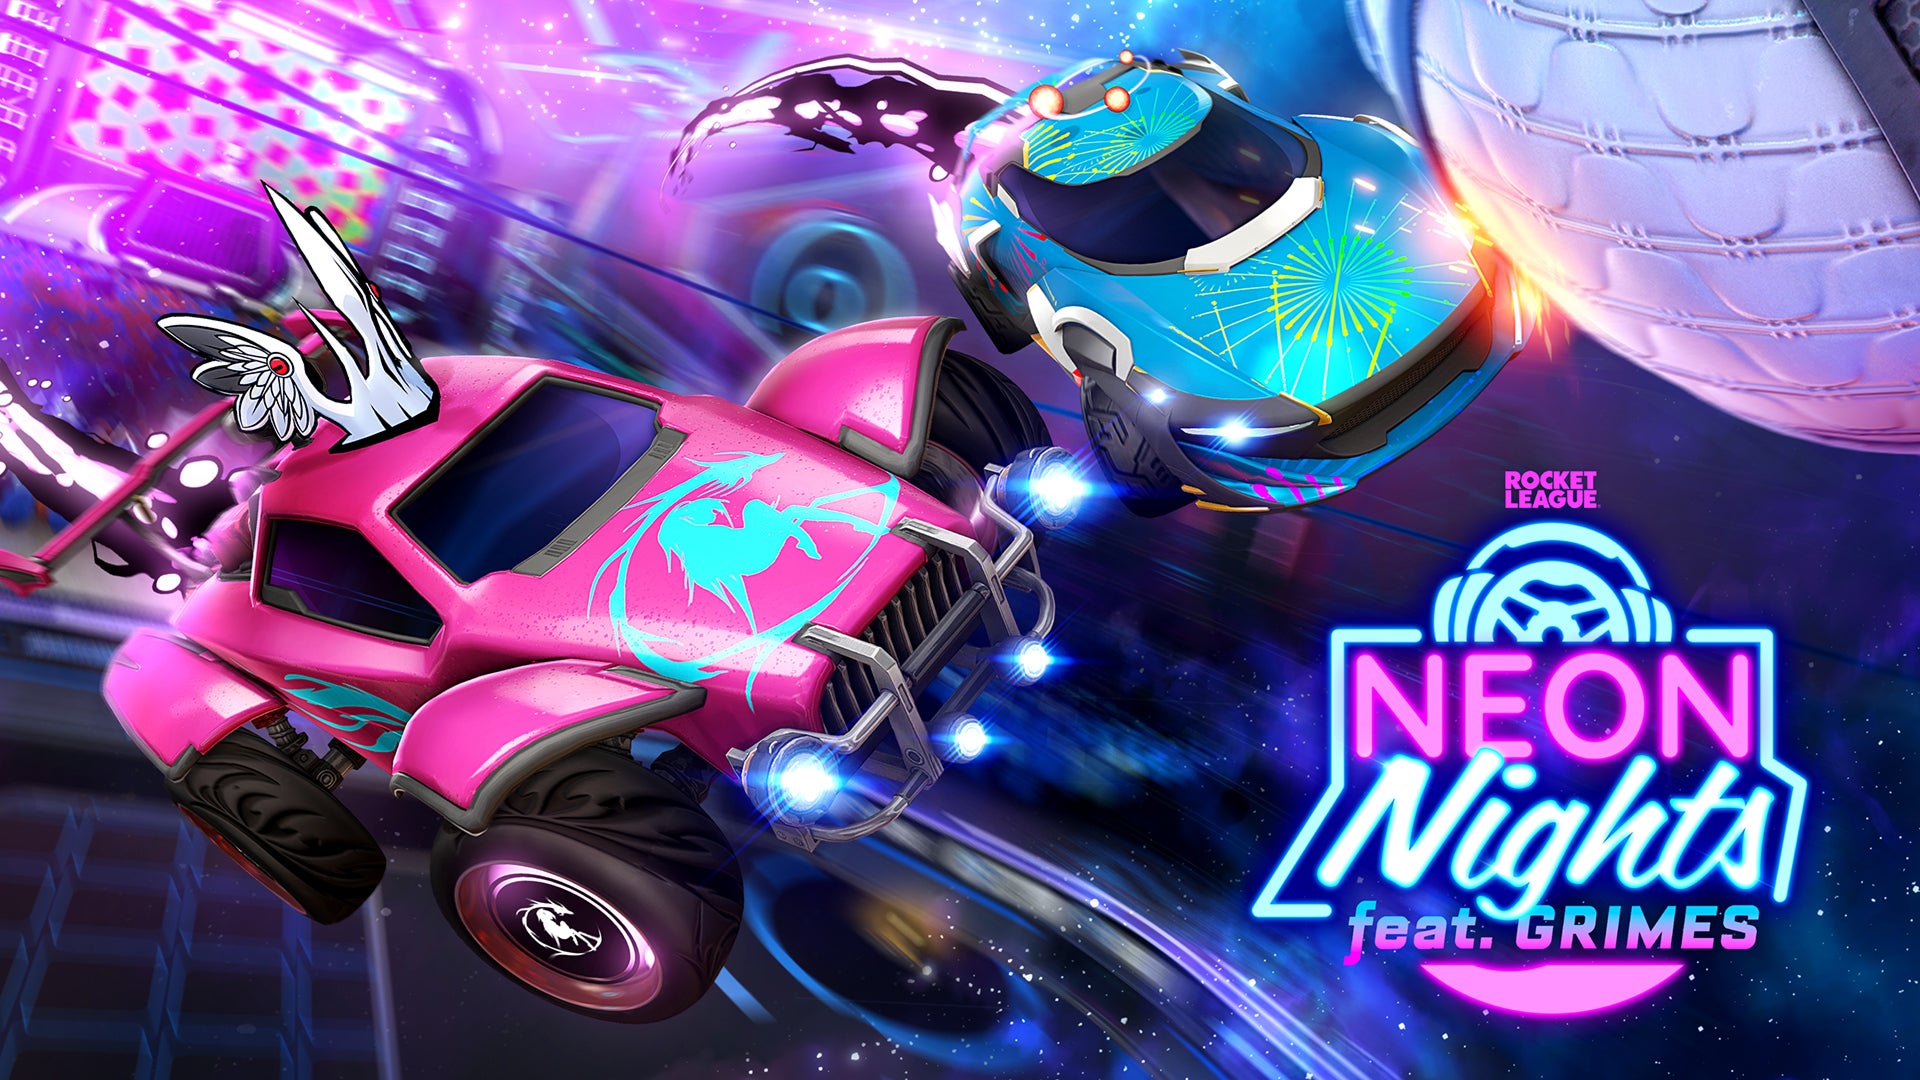 Neon Nights celebra a música do Rocket League Image